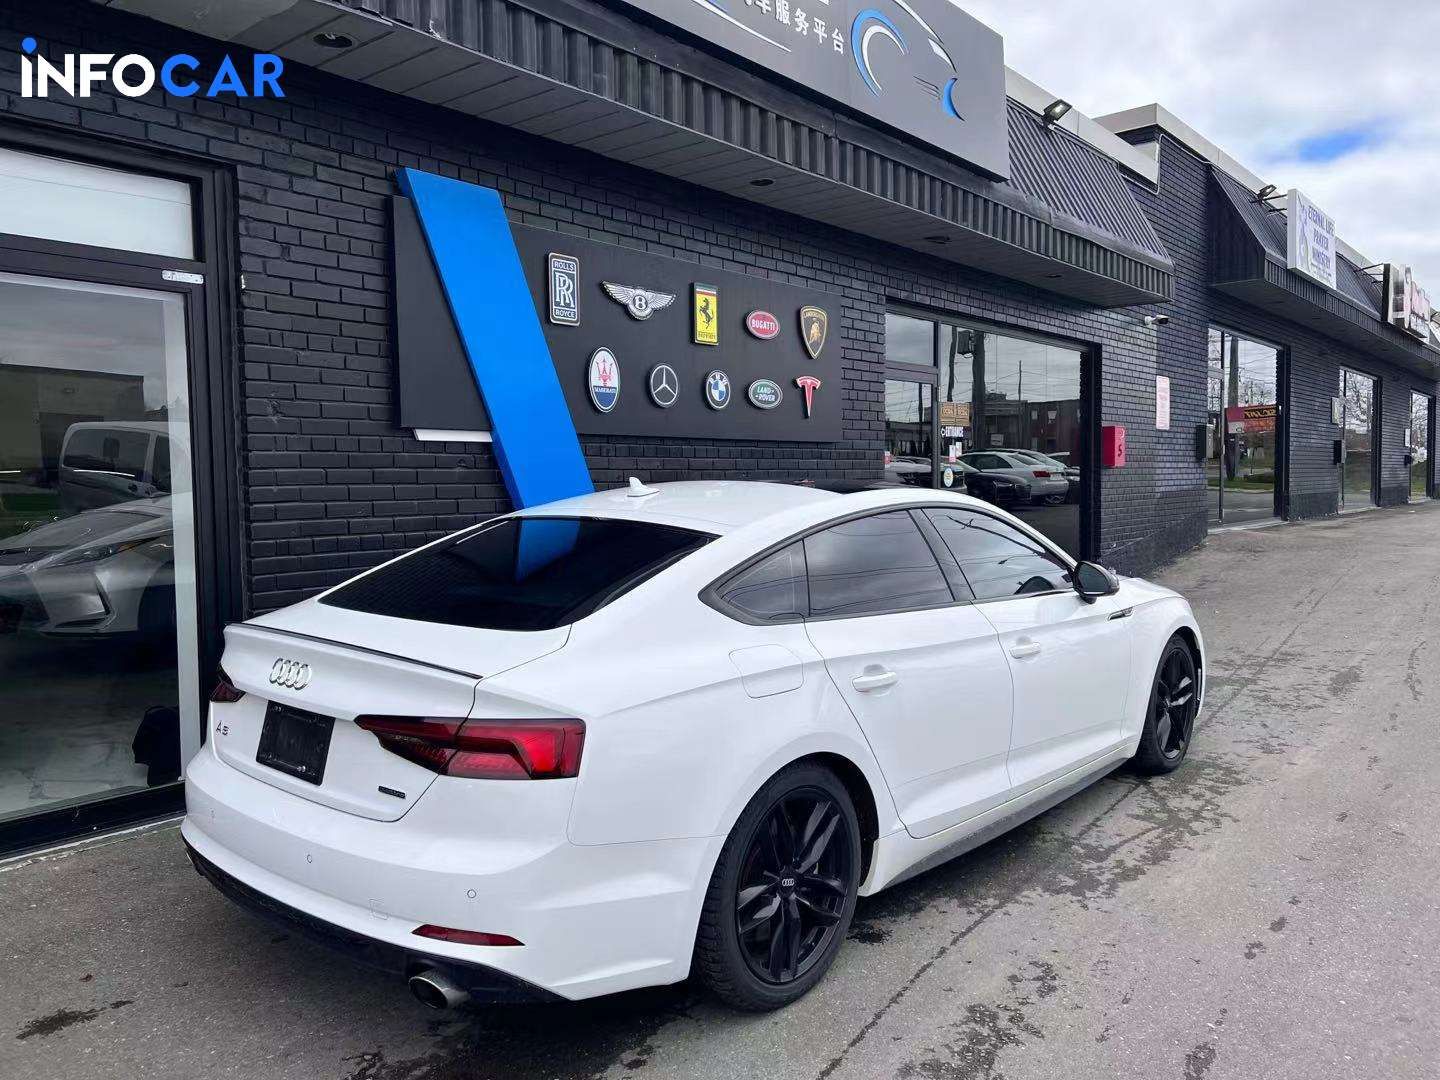 2019 Audi A5 Technik  - INFOCAR - Toronto Auto Trading Platform